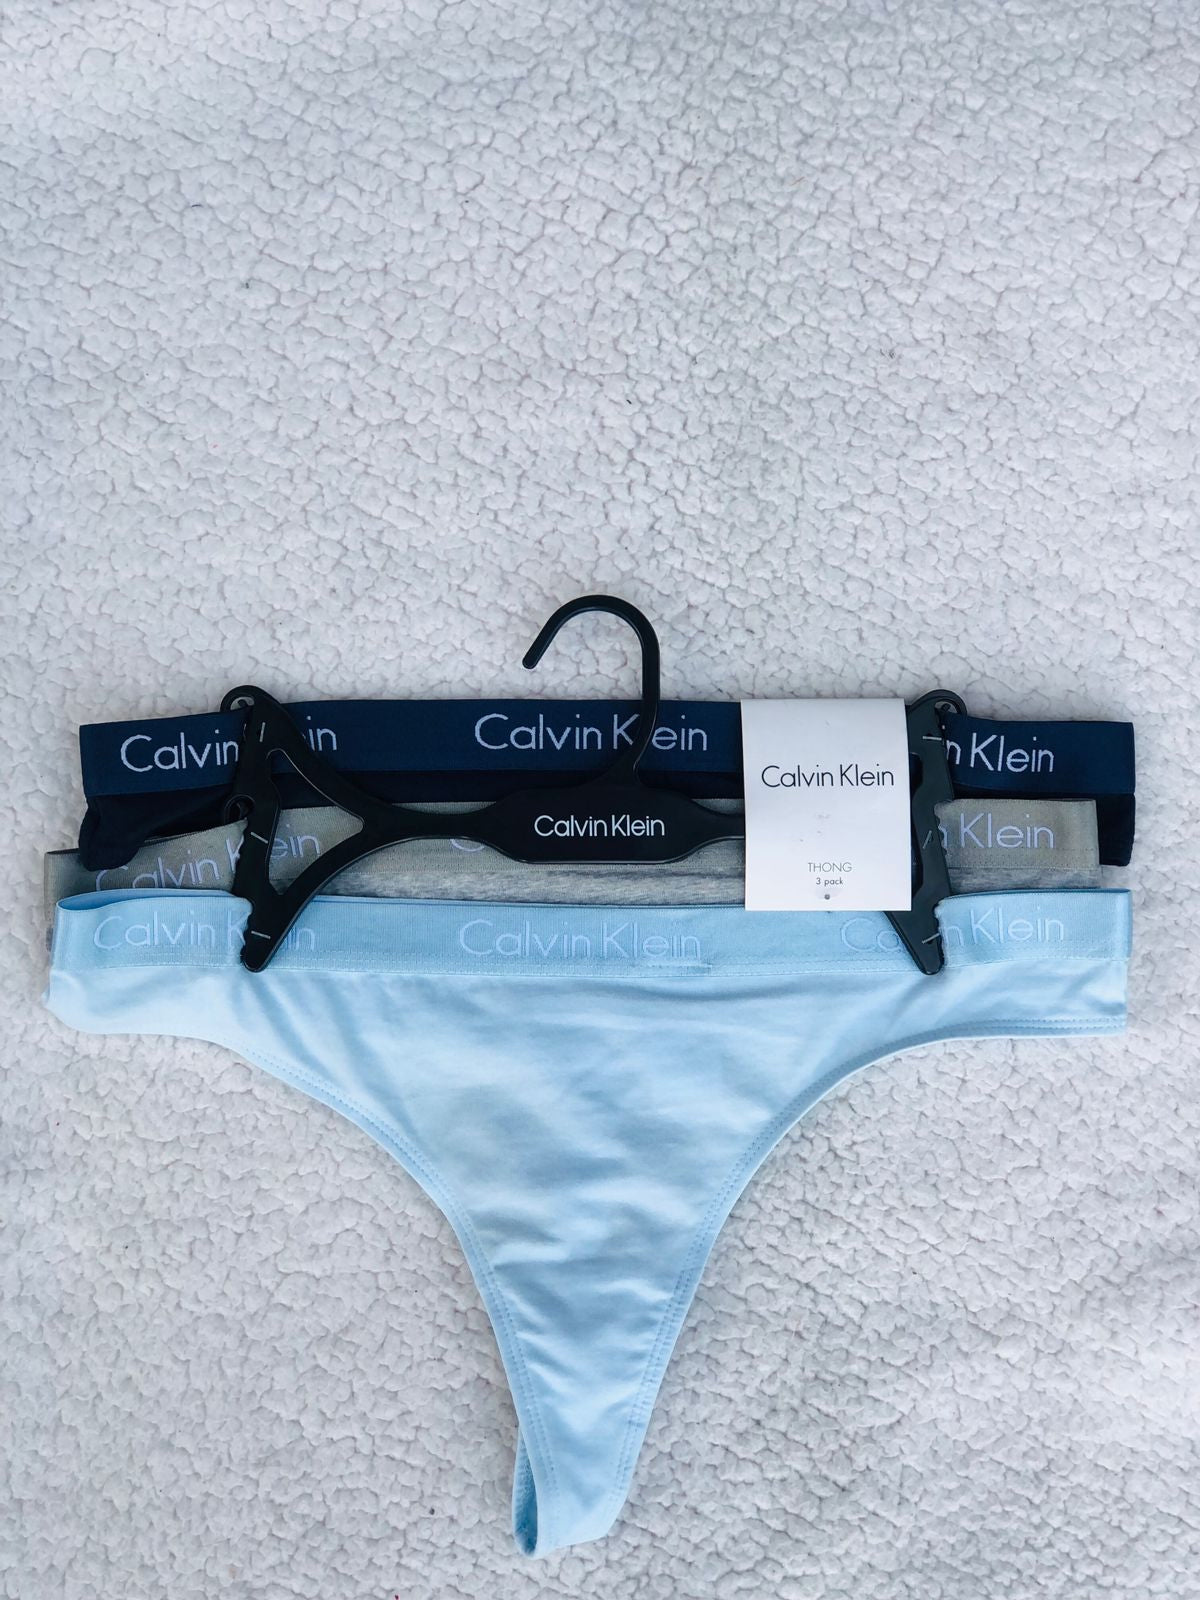 Calvi Klein underwear set